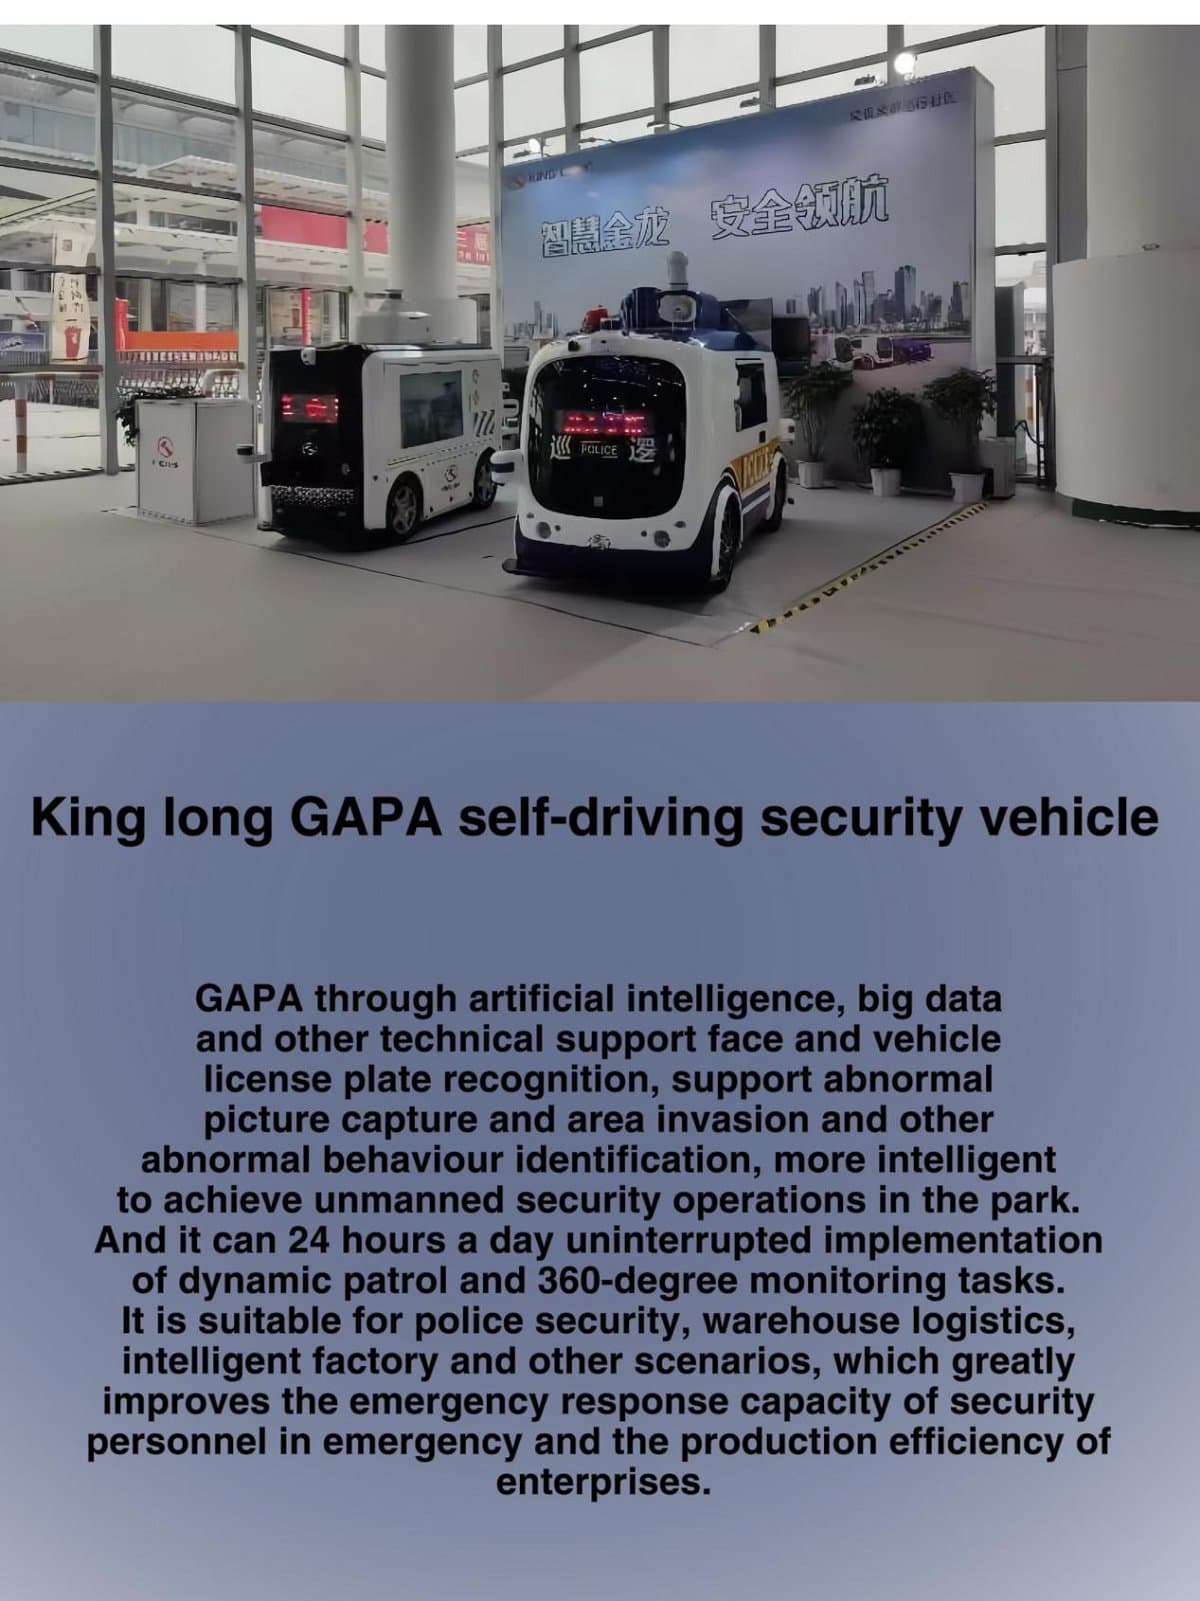 وسیله نقلیه امنیتی خودران کینگ لانگ GAPA